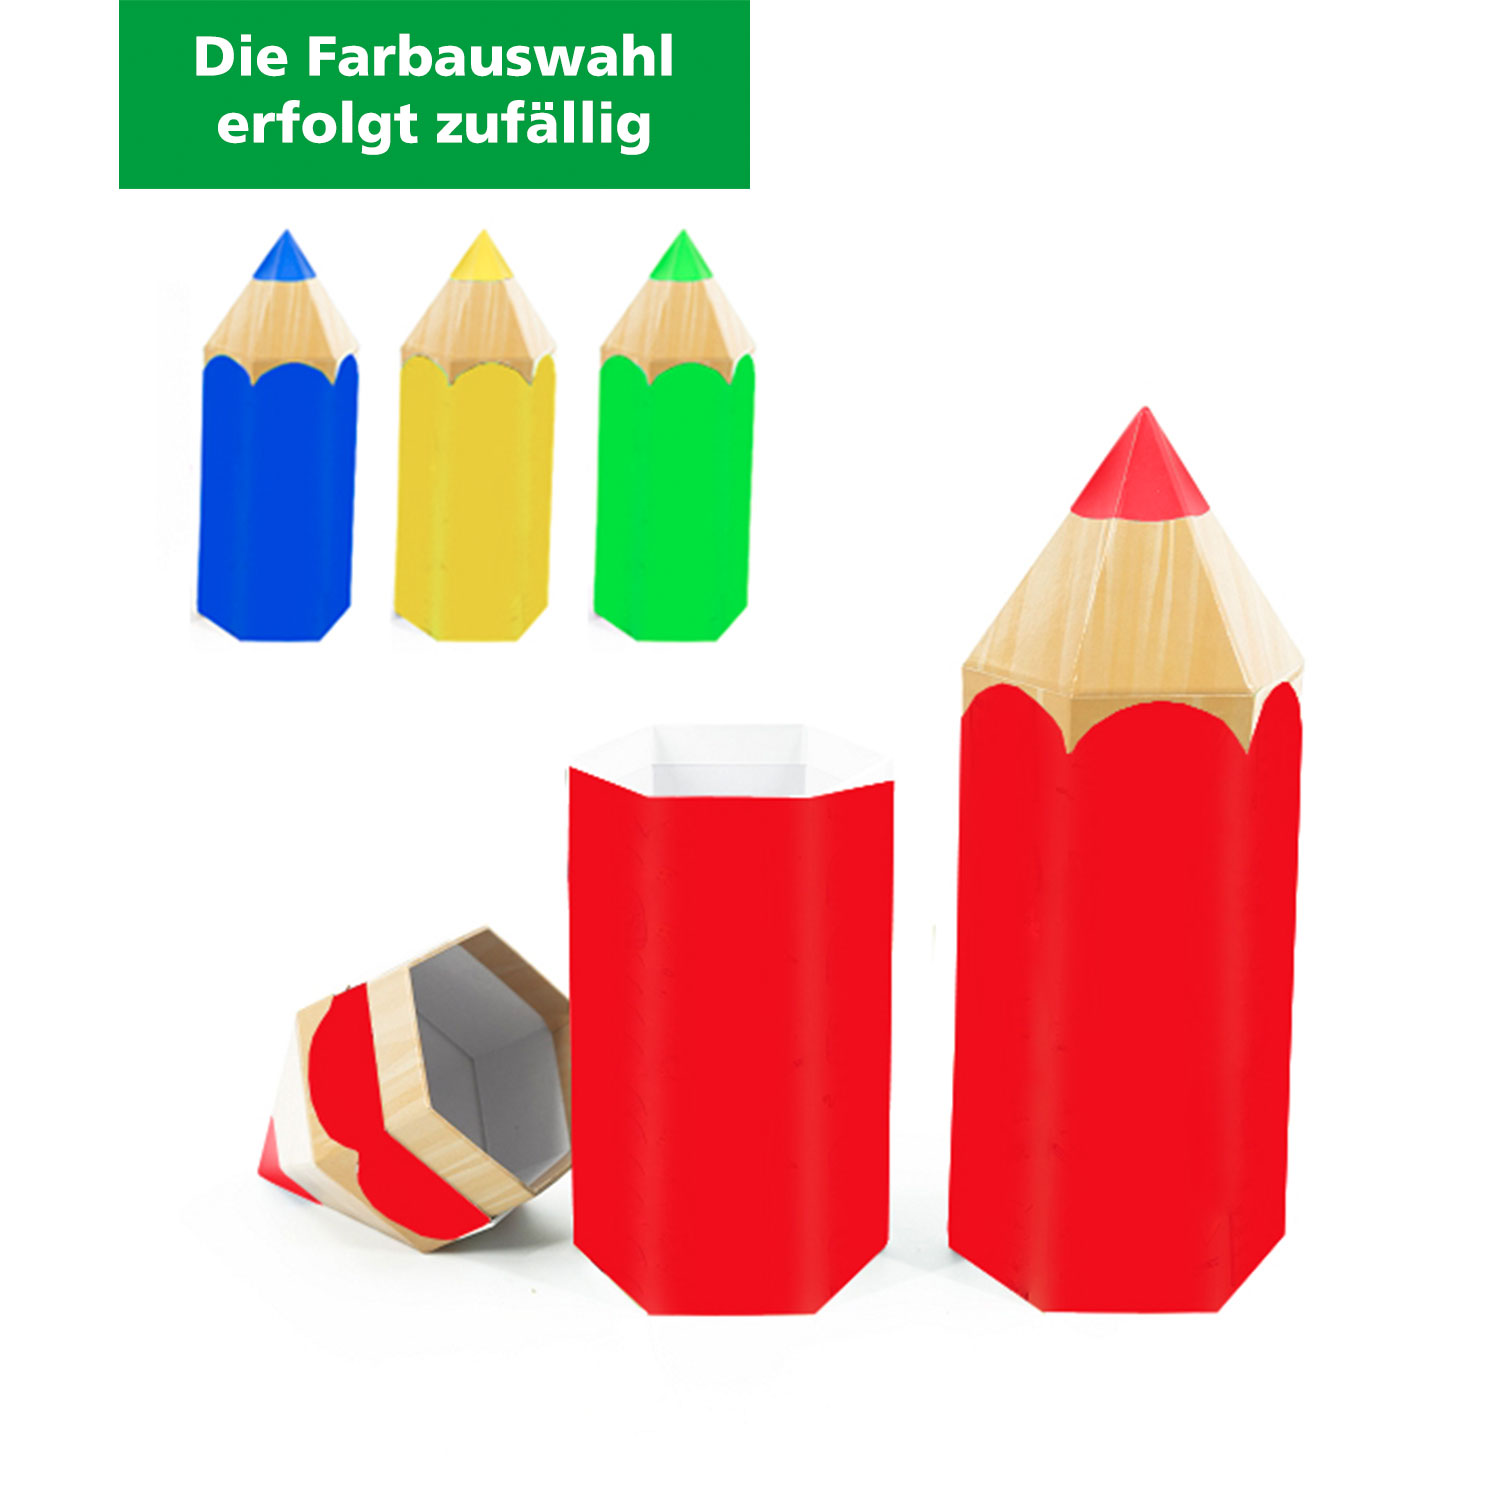 Stiftbox aus Pappe 28 cm verschiedene Farben (Farbauswahl erfolgt zufällig) 